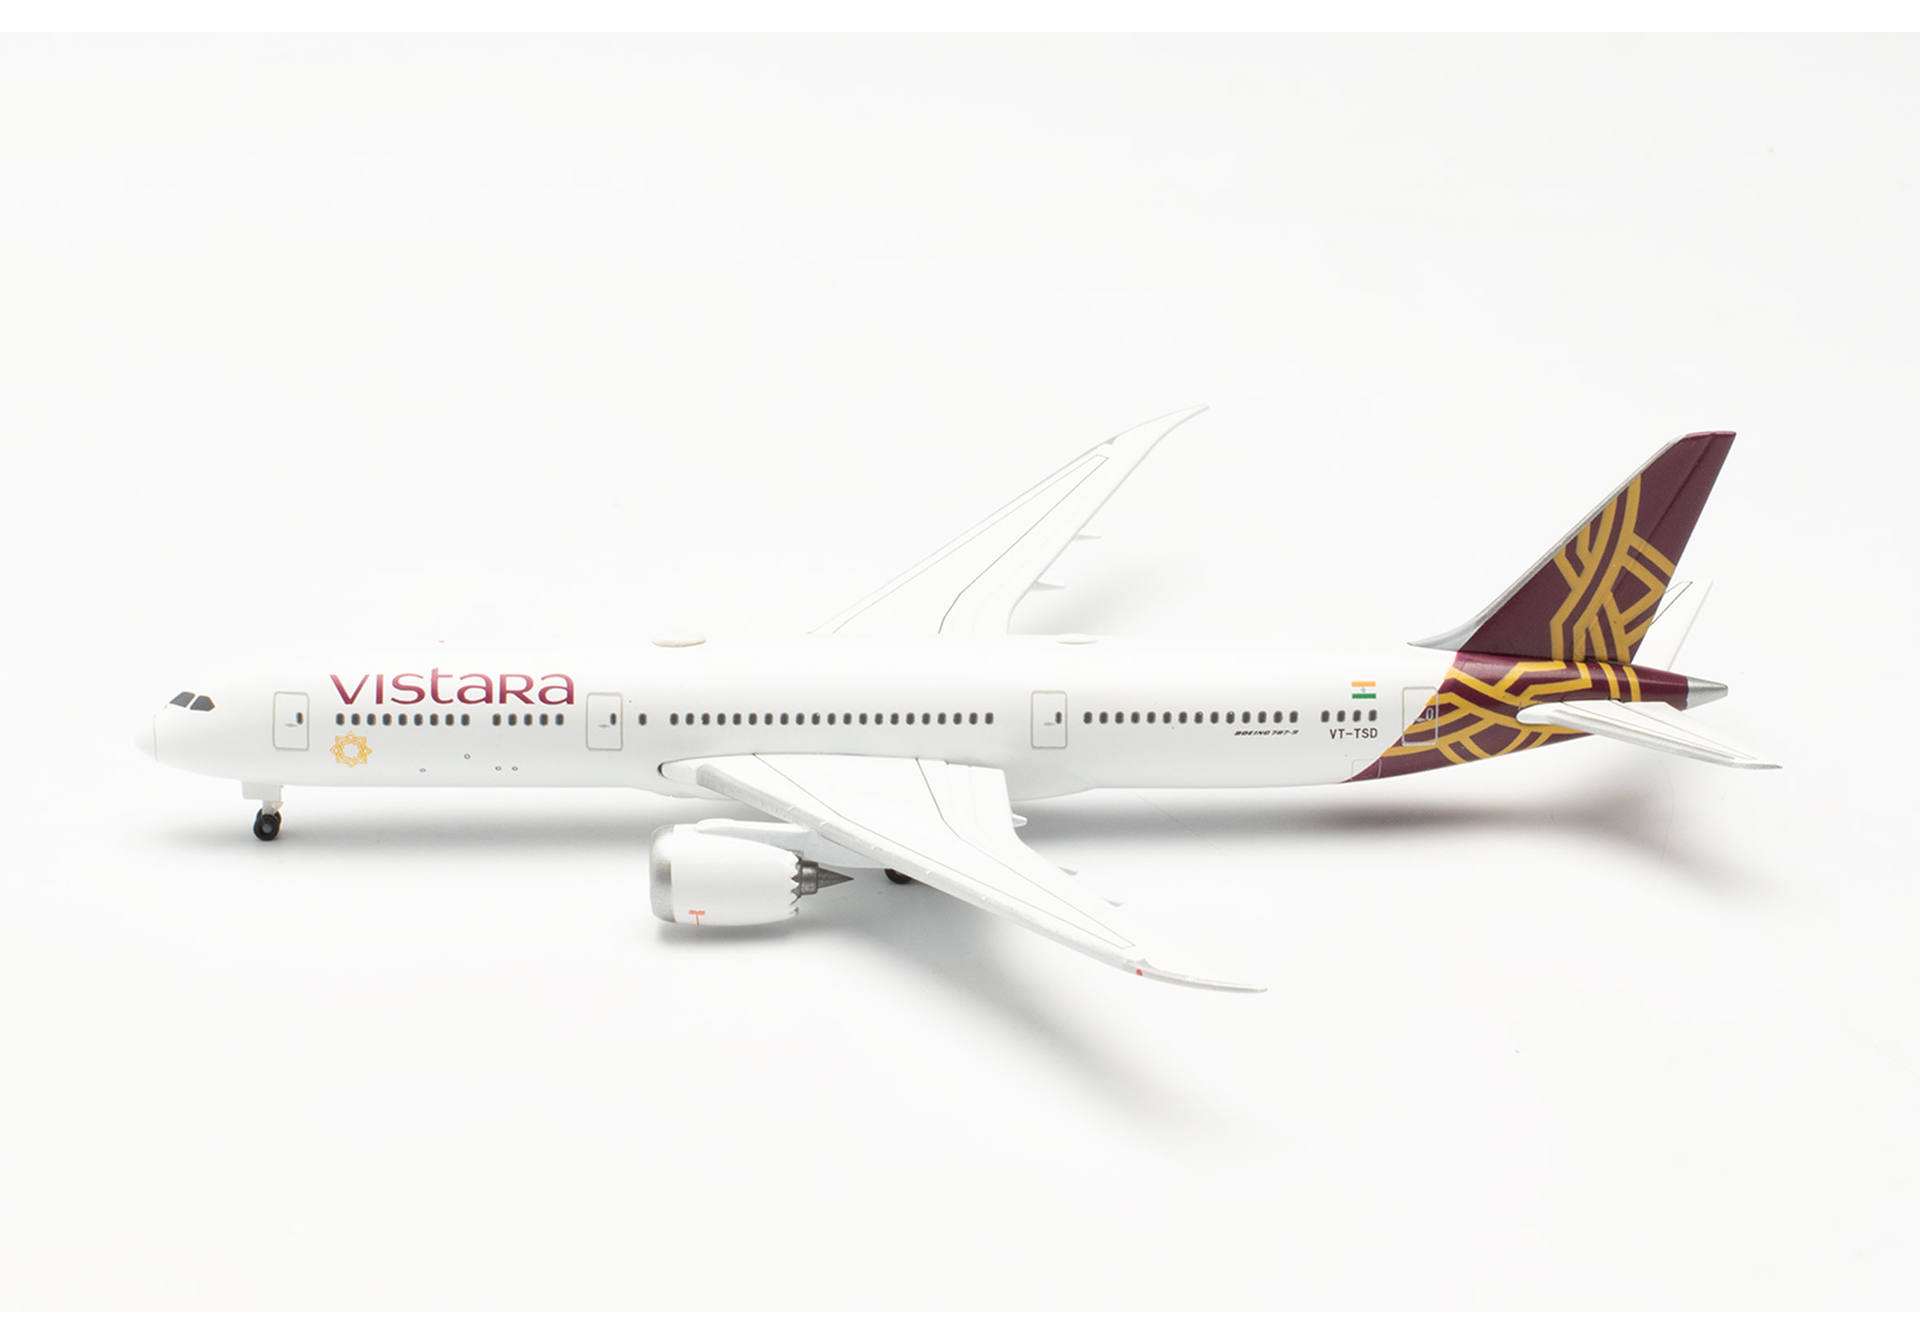 Vistara Boeing 787-9 Dreamliner – VT-TSD